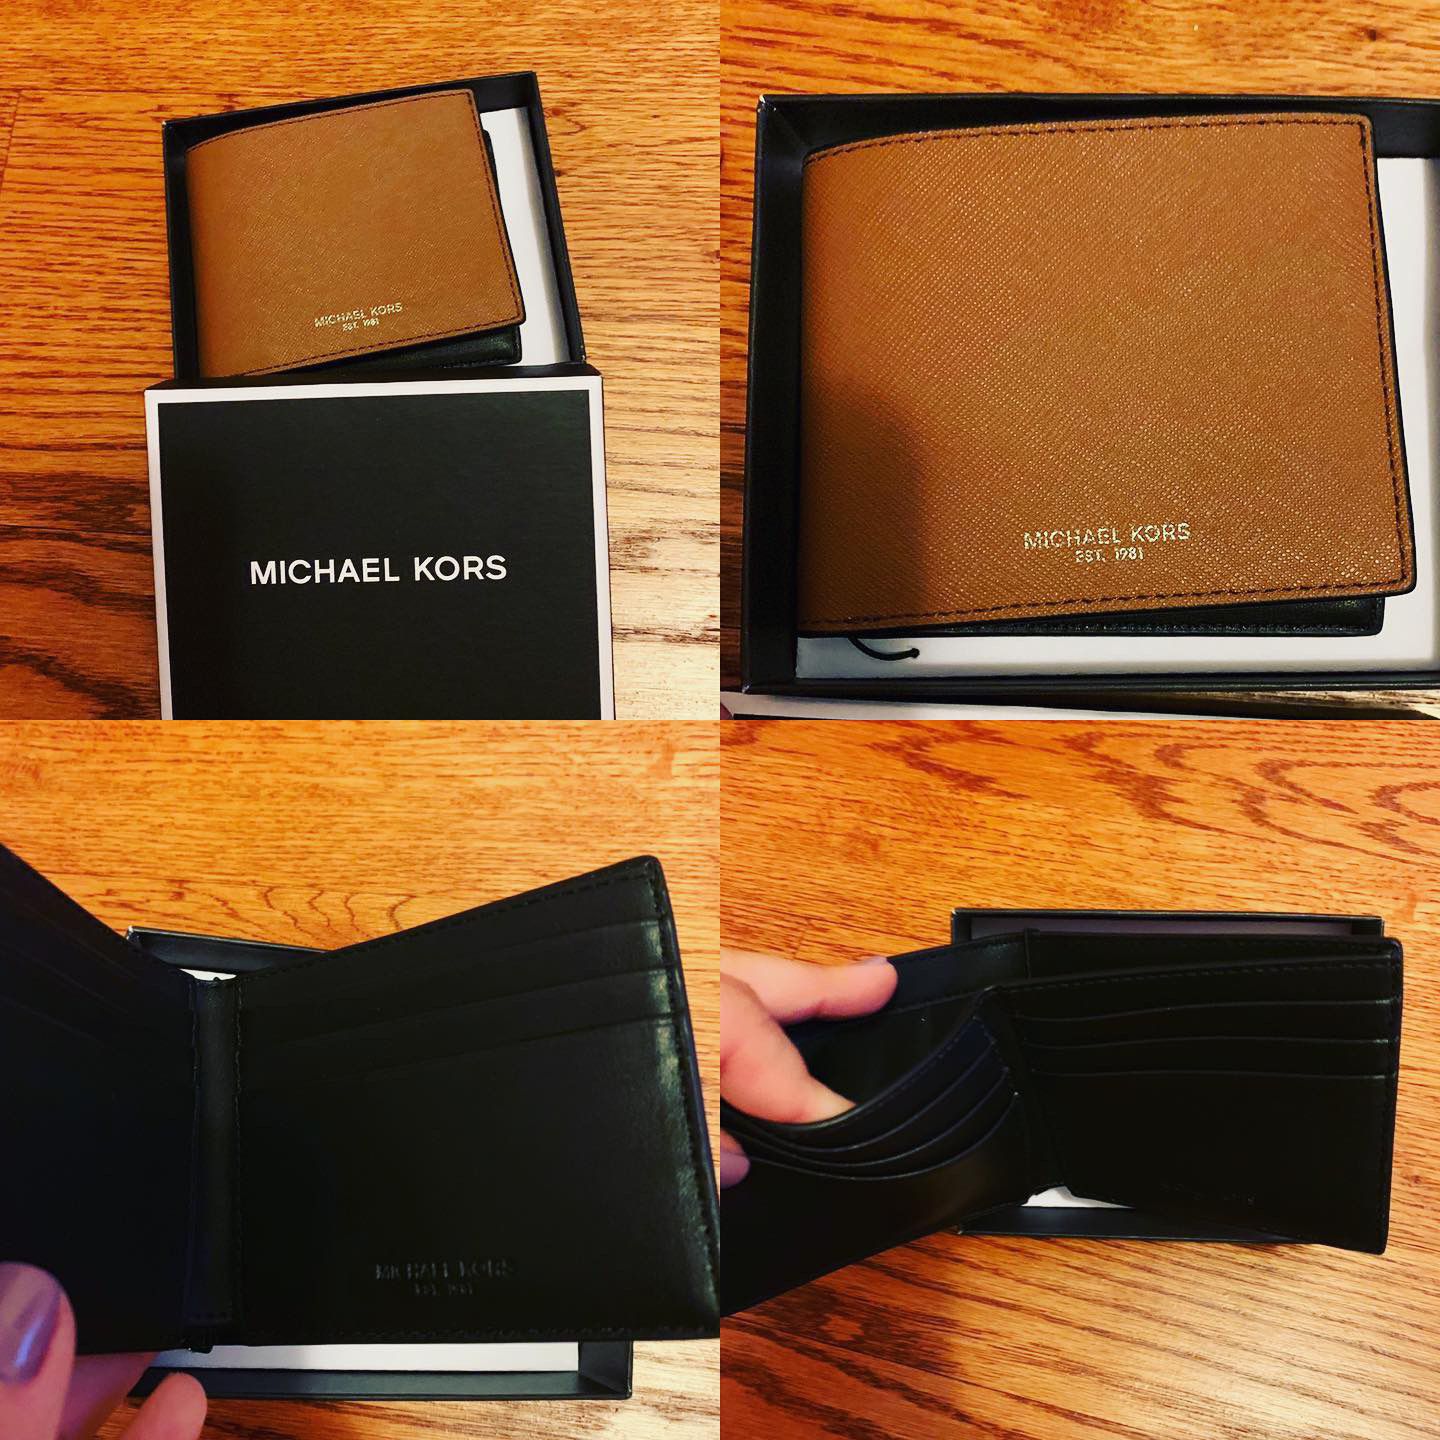 Michael Kors men’s wallet